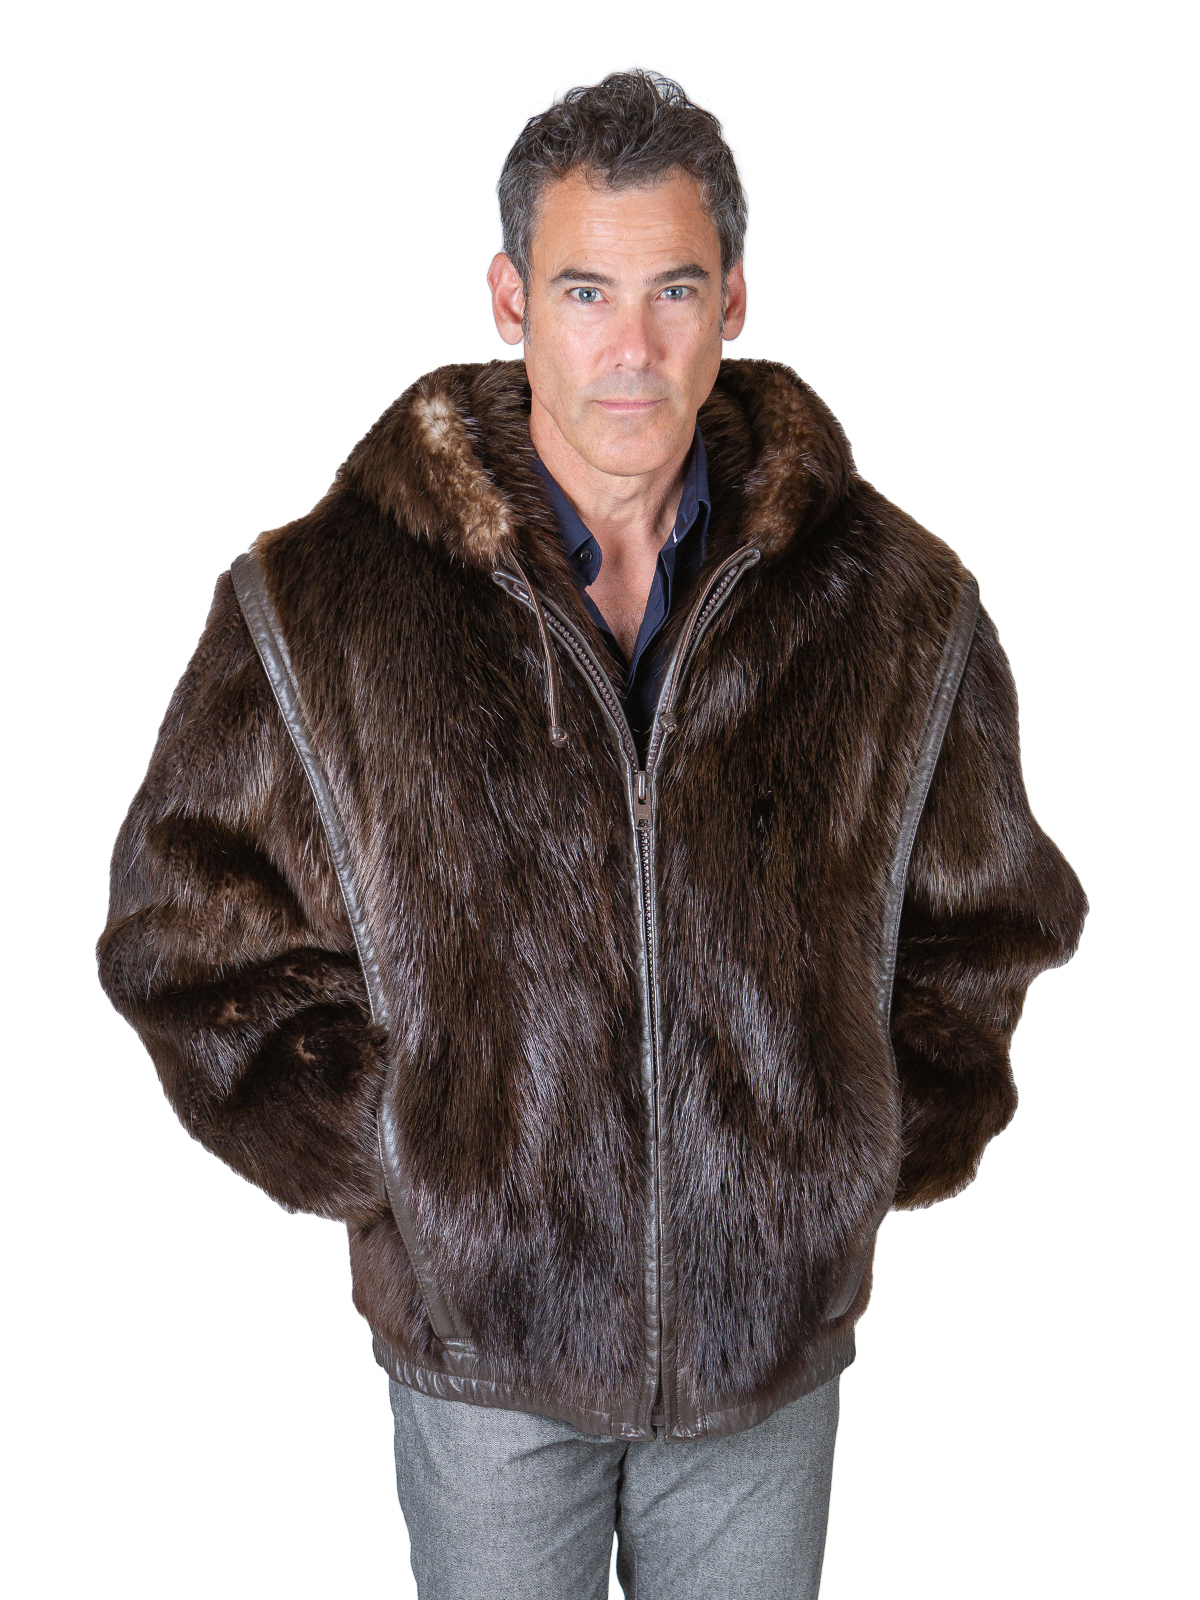 Mens mink fur coat and jacket